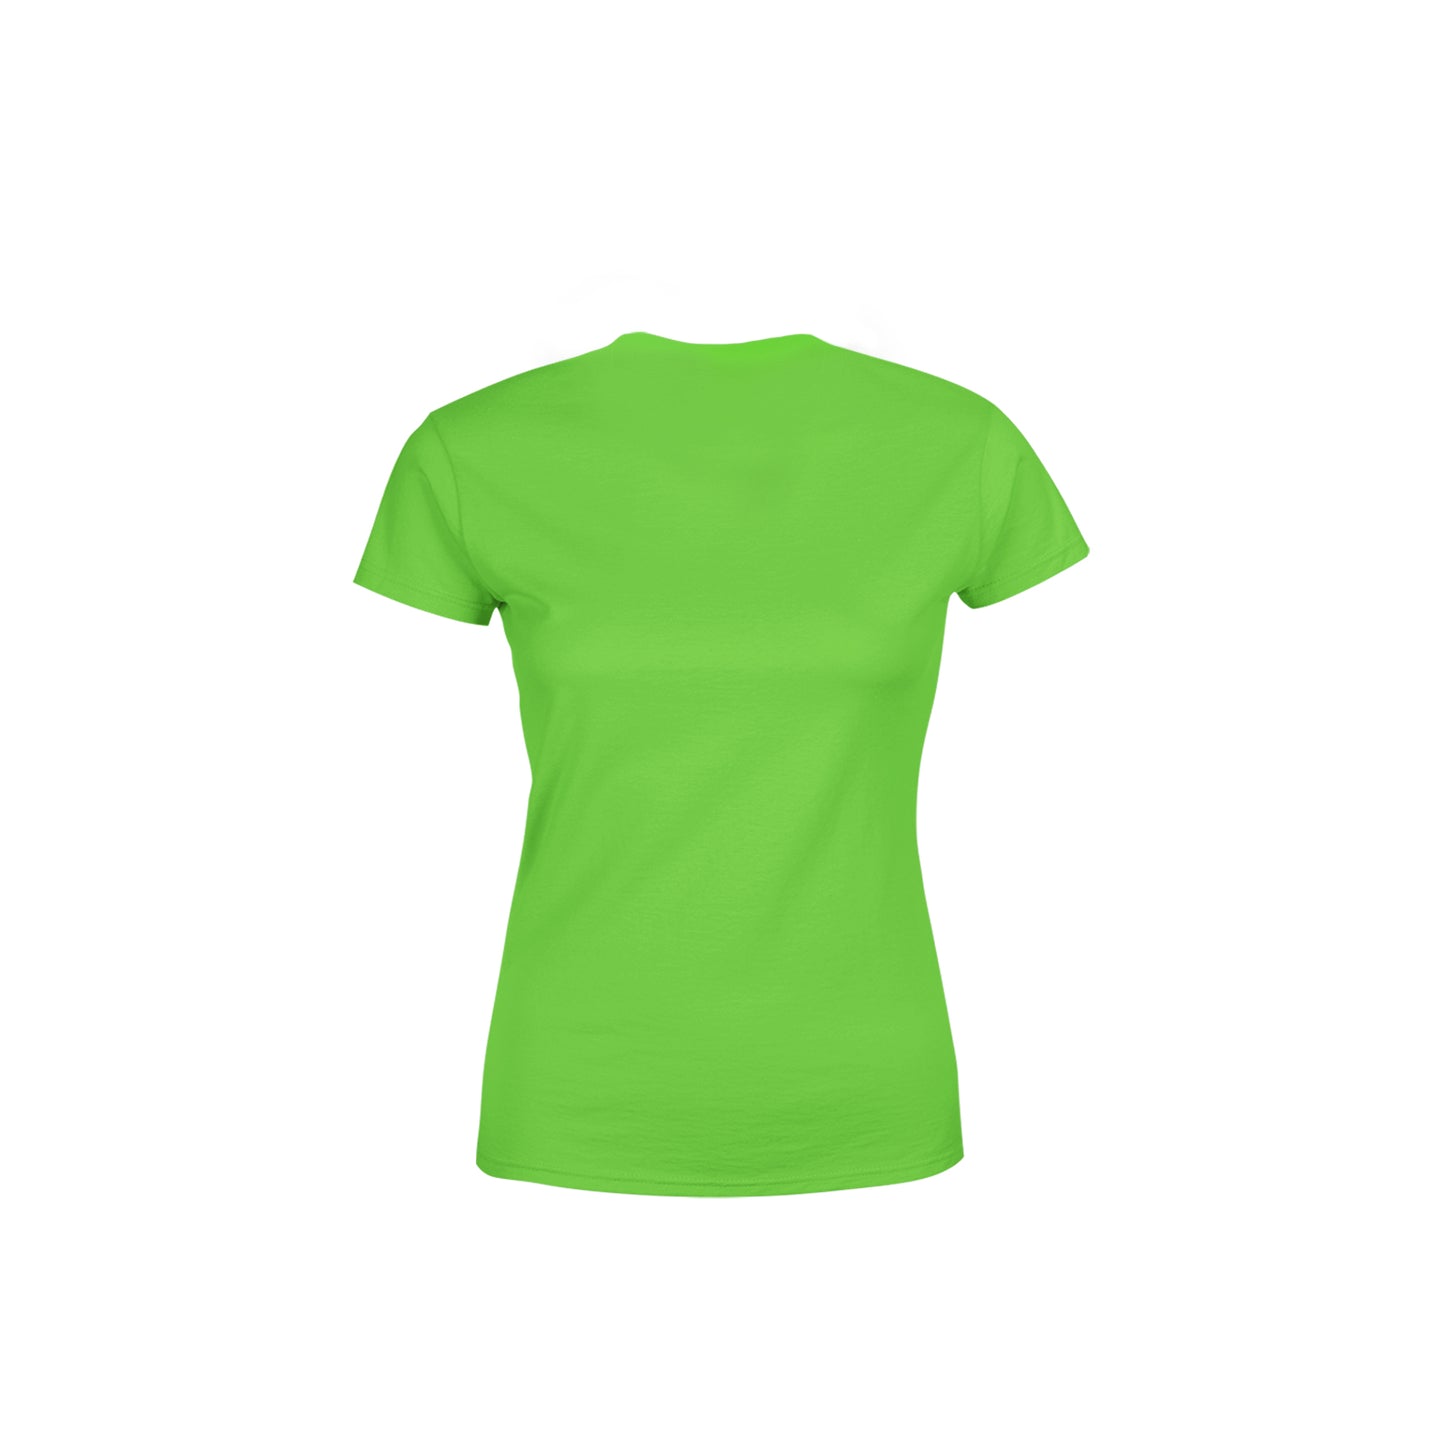 28 Number Women's T-Shirt (Liril Green)